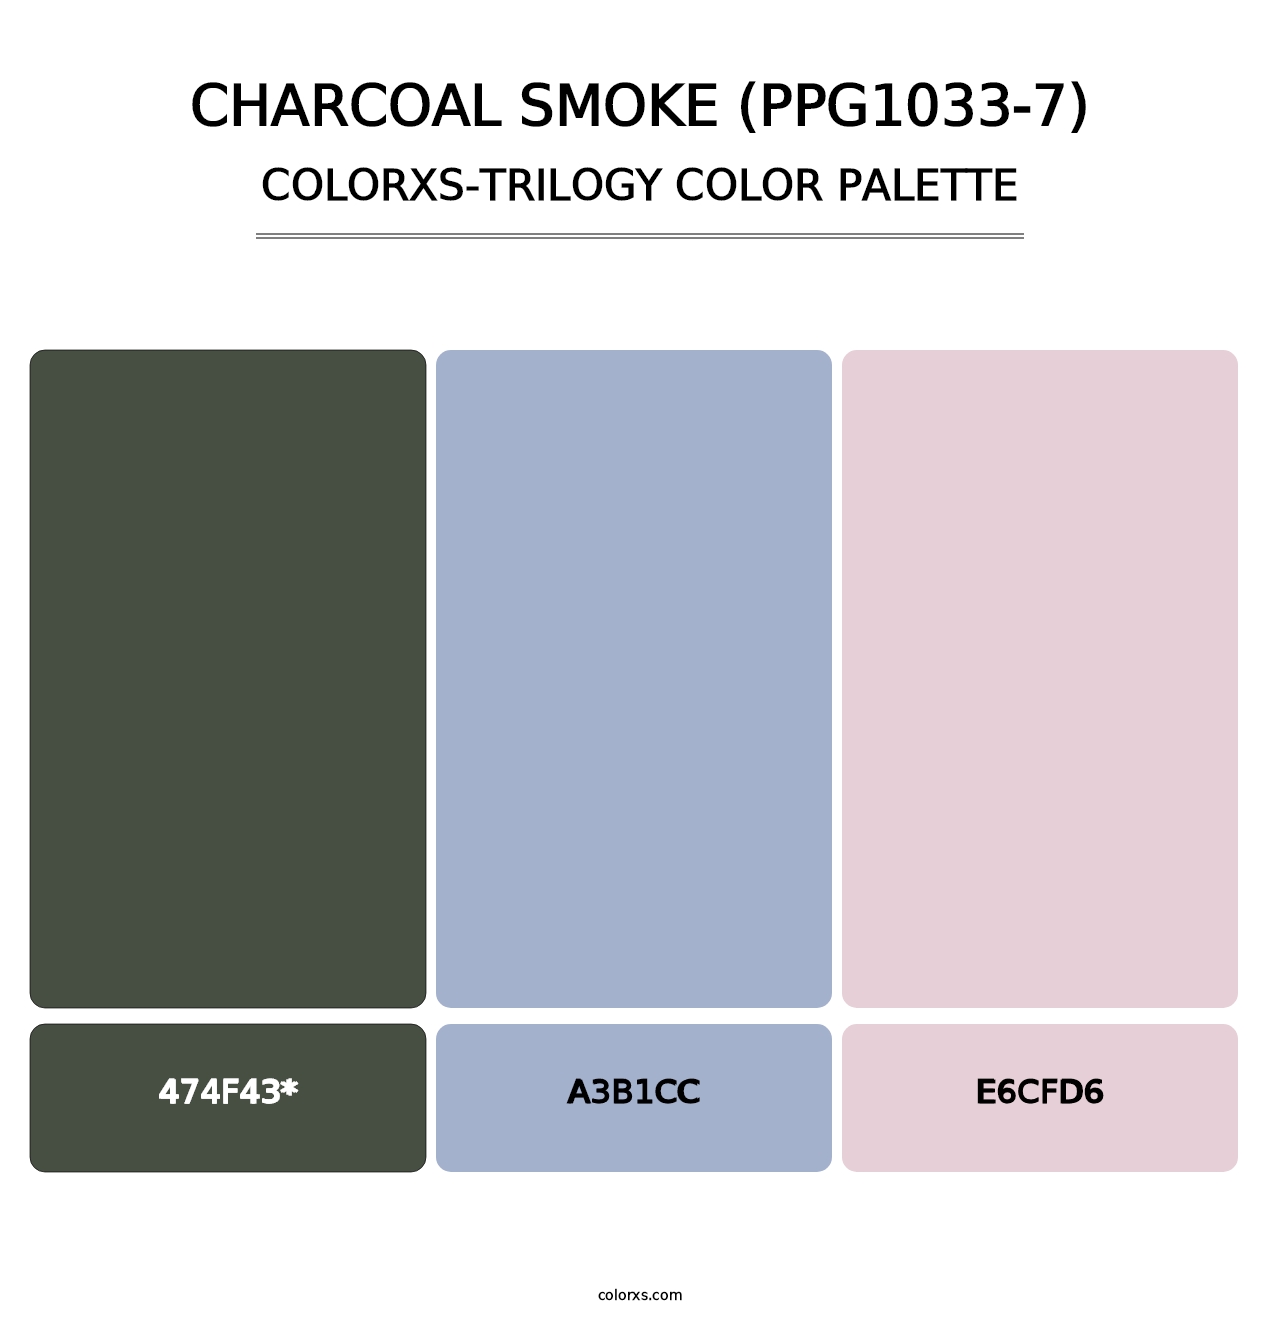 Charcoal Smoke (PPG1033-7) - Colorxs Trilogy Palette